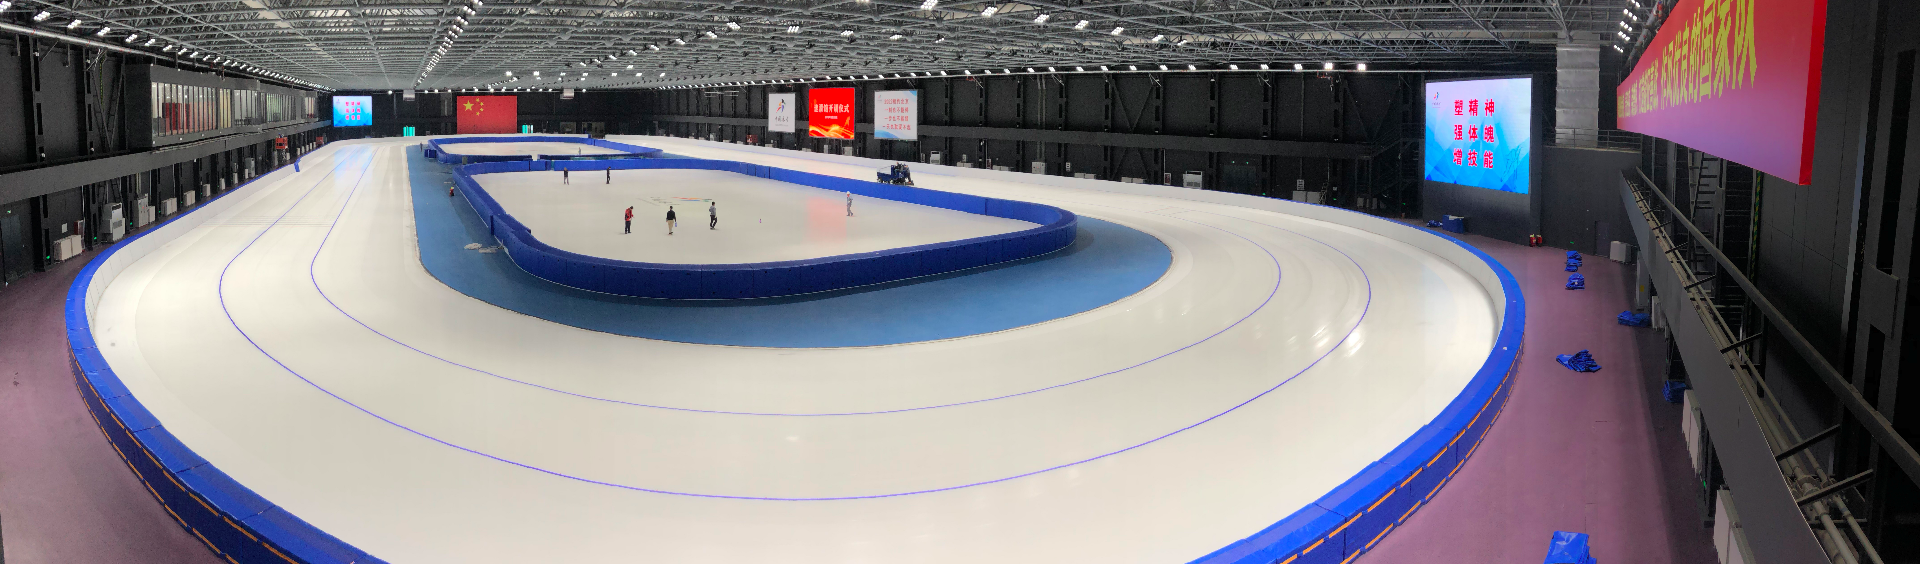 中车北京二七公司 国家冰雪运动训练科研基地速滑馆